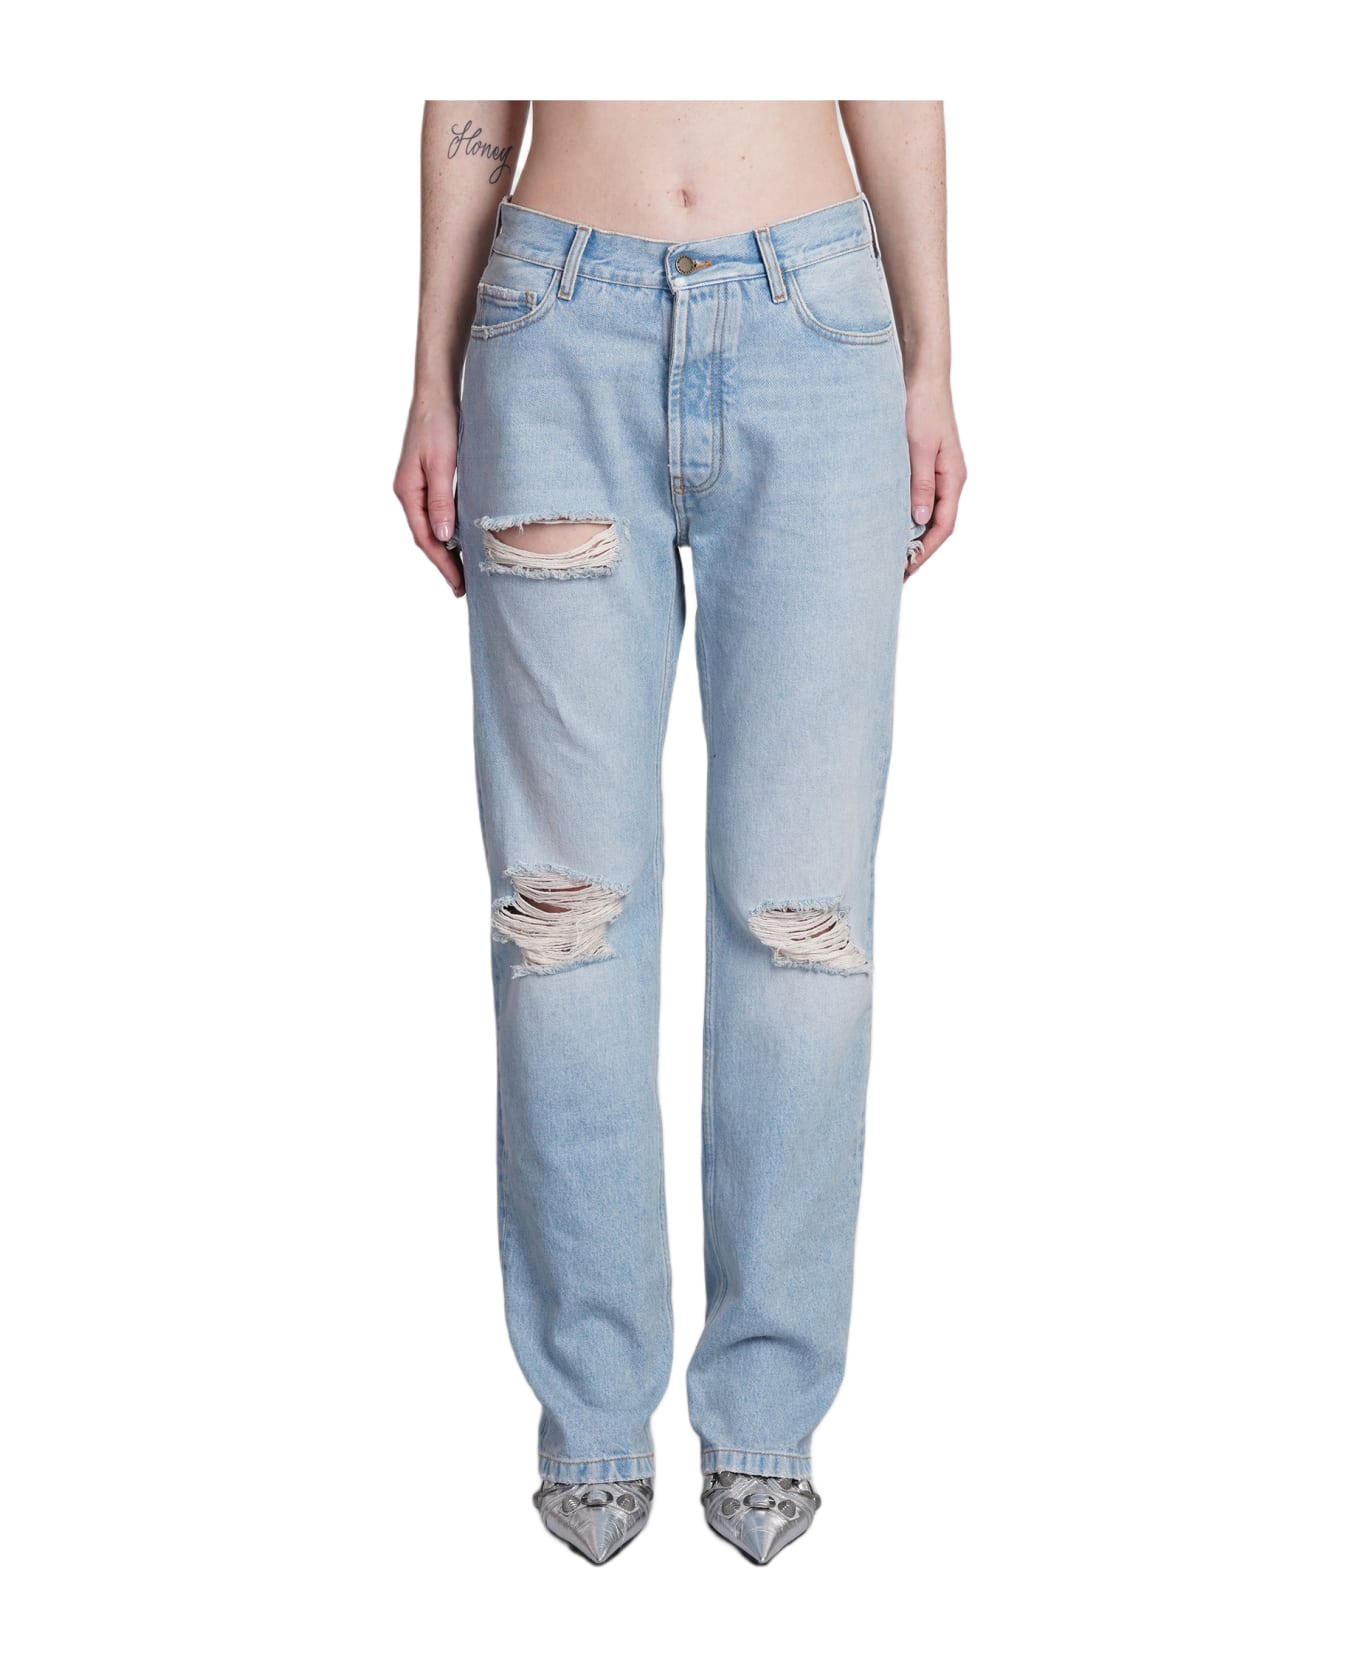 DARKPARK Naomi Jeans In Blue Cotton - blue デニム